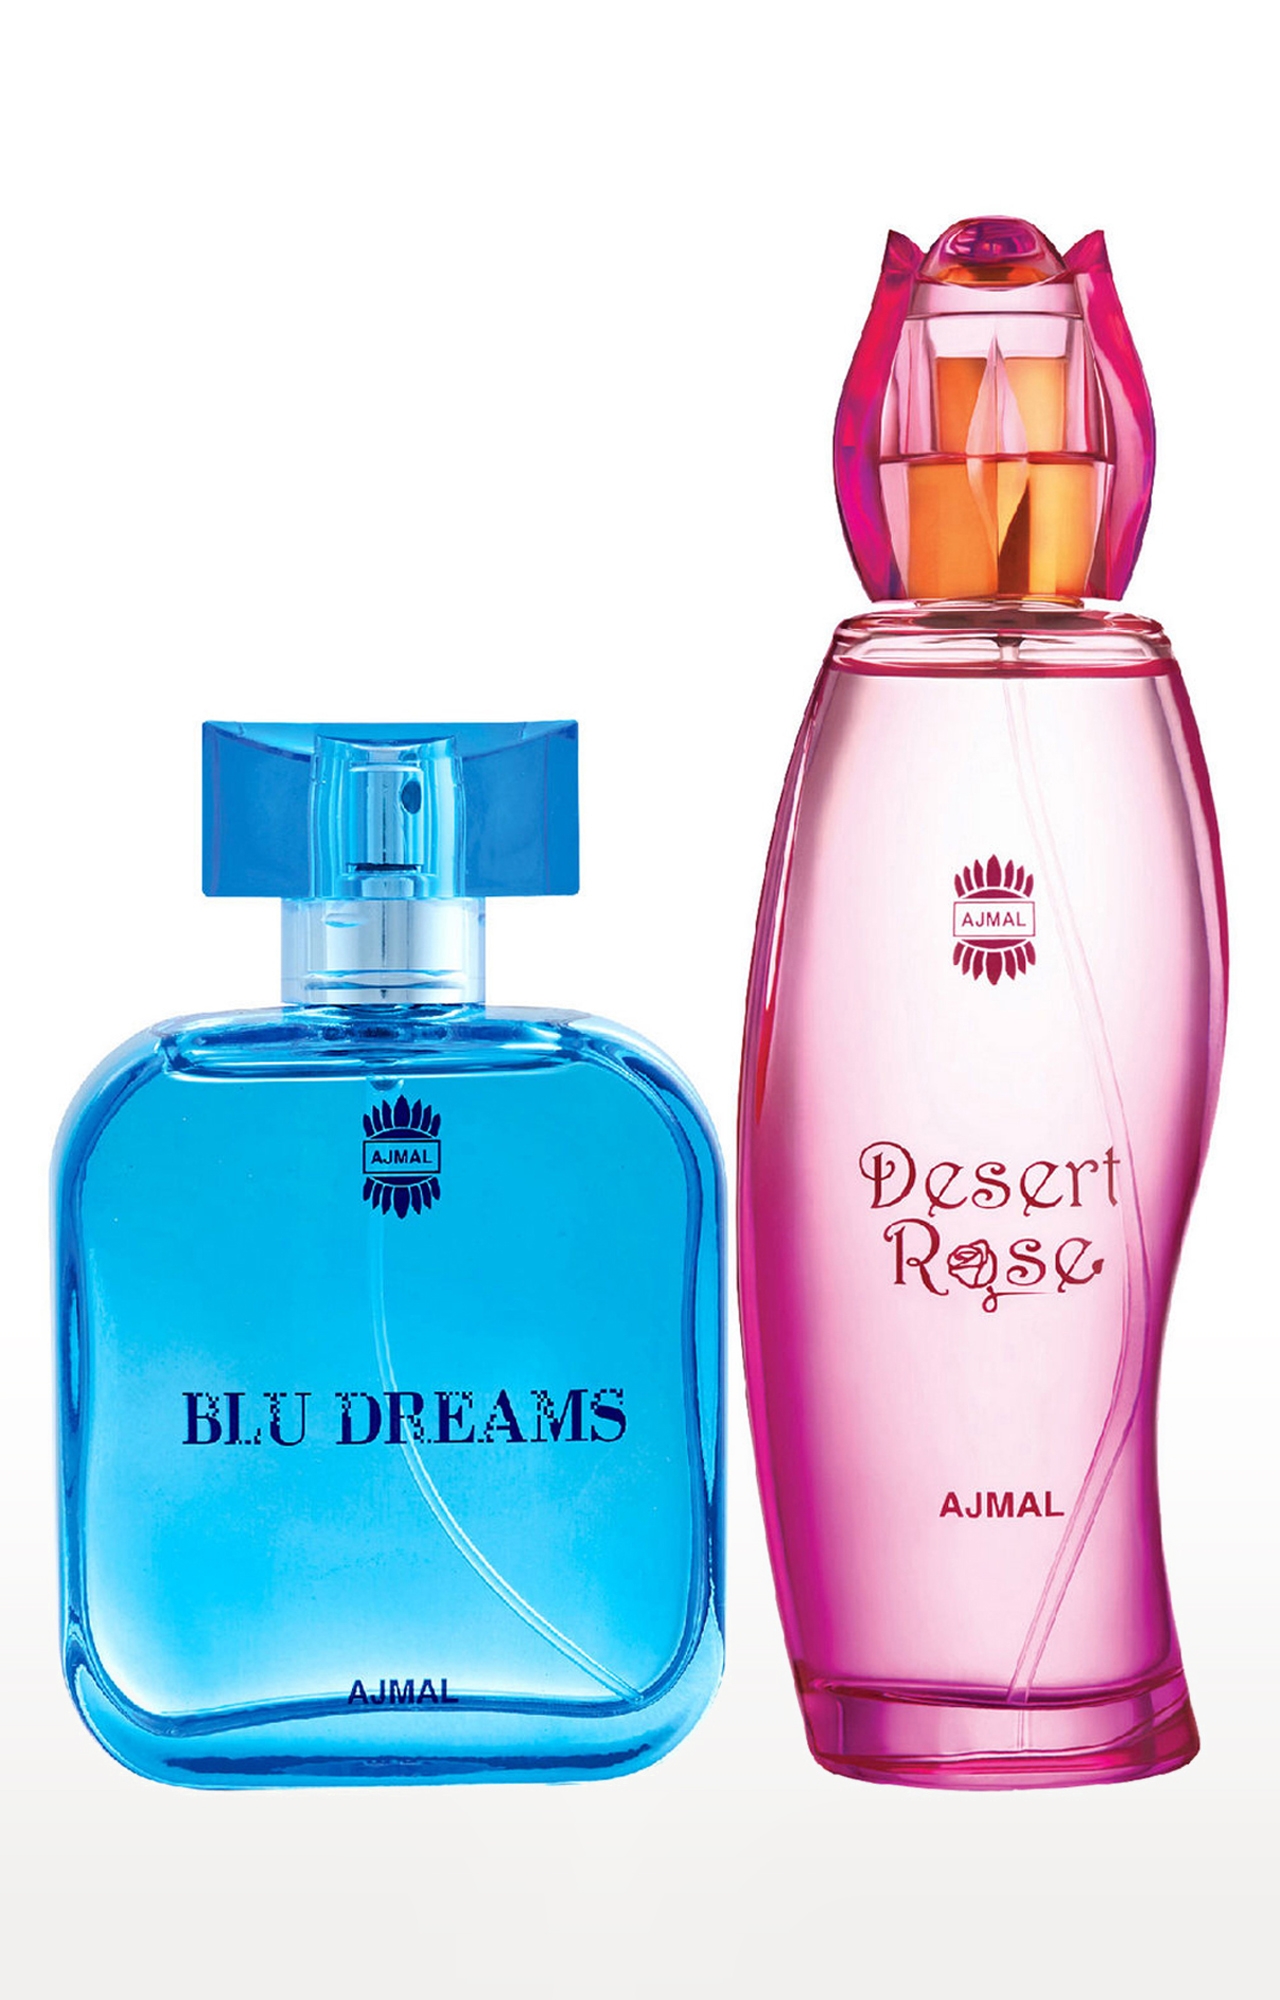 Ajmal Blu Dreams EDP Citurs Fruity Perfume 100ml for Men and Desert Rose EDP Oriental Perfume 100ml for Women